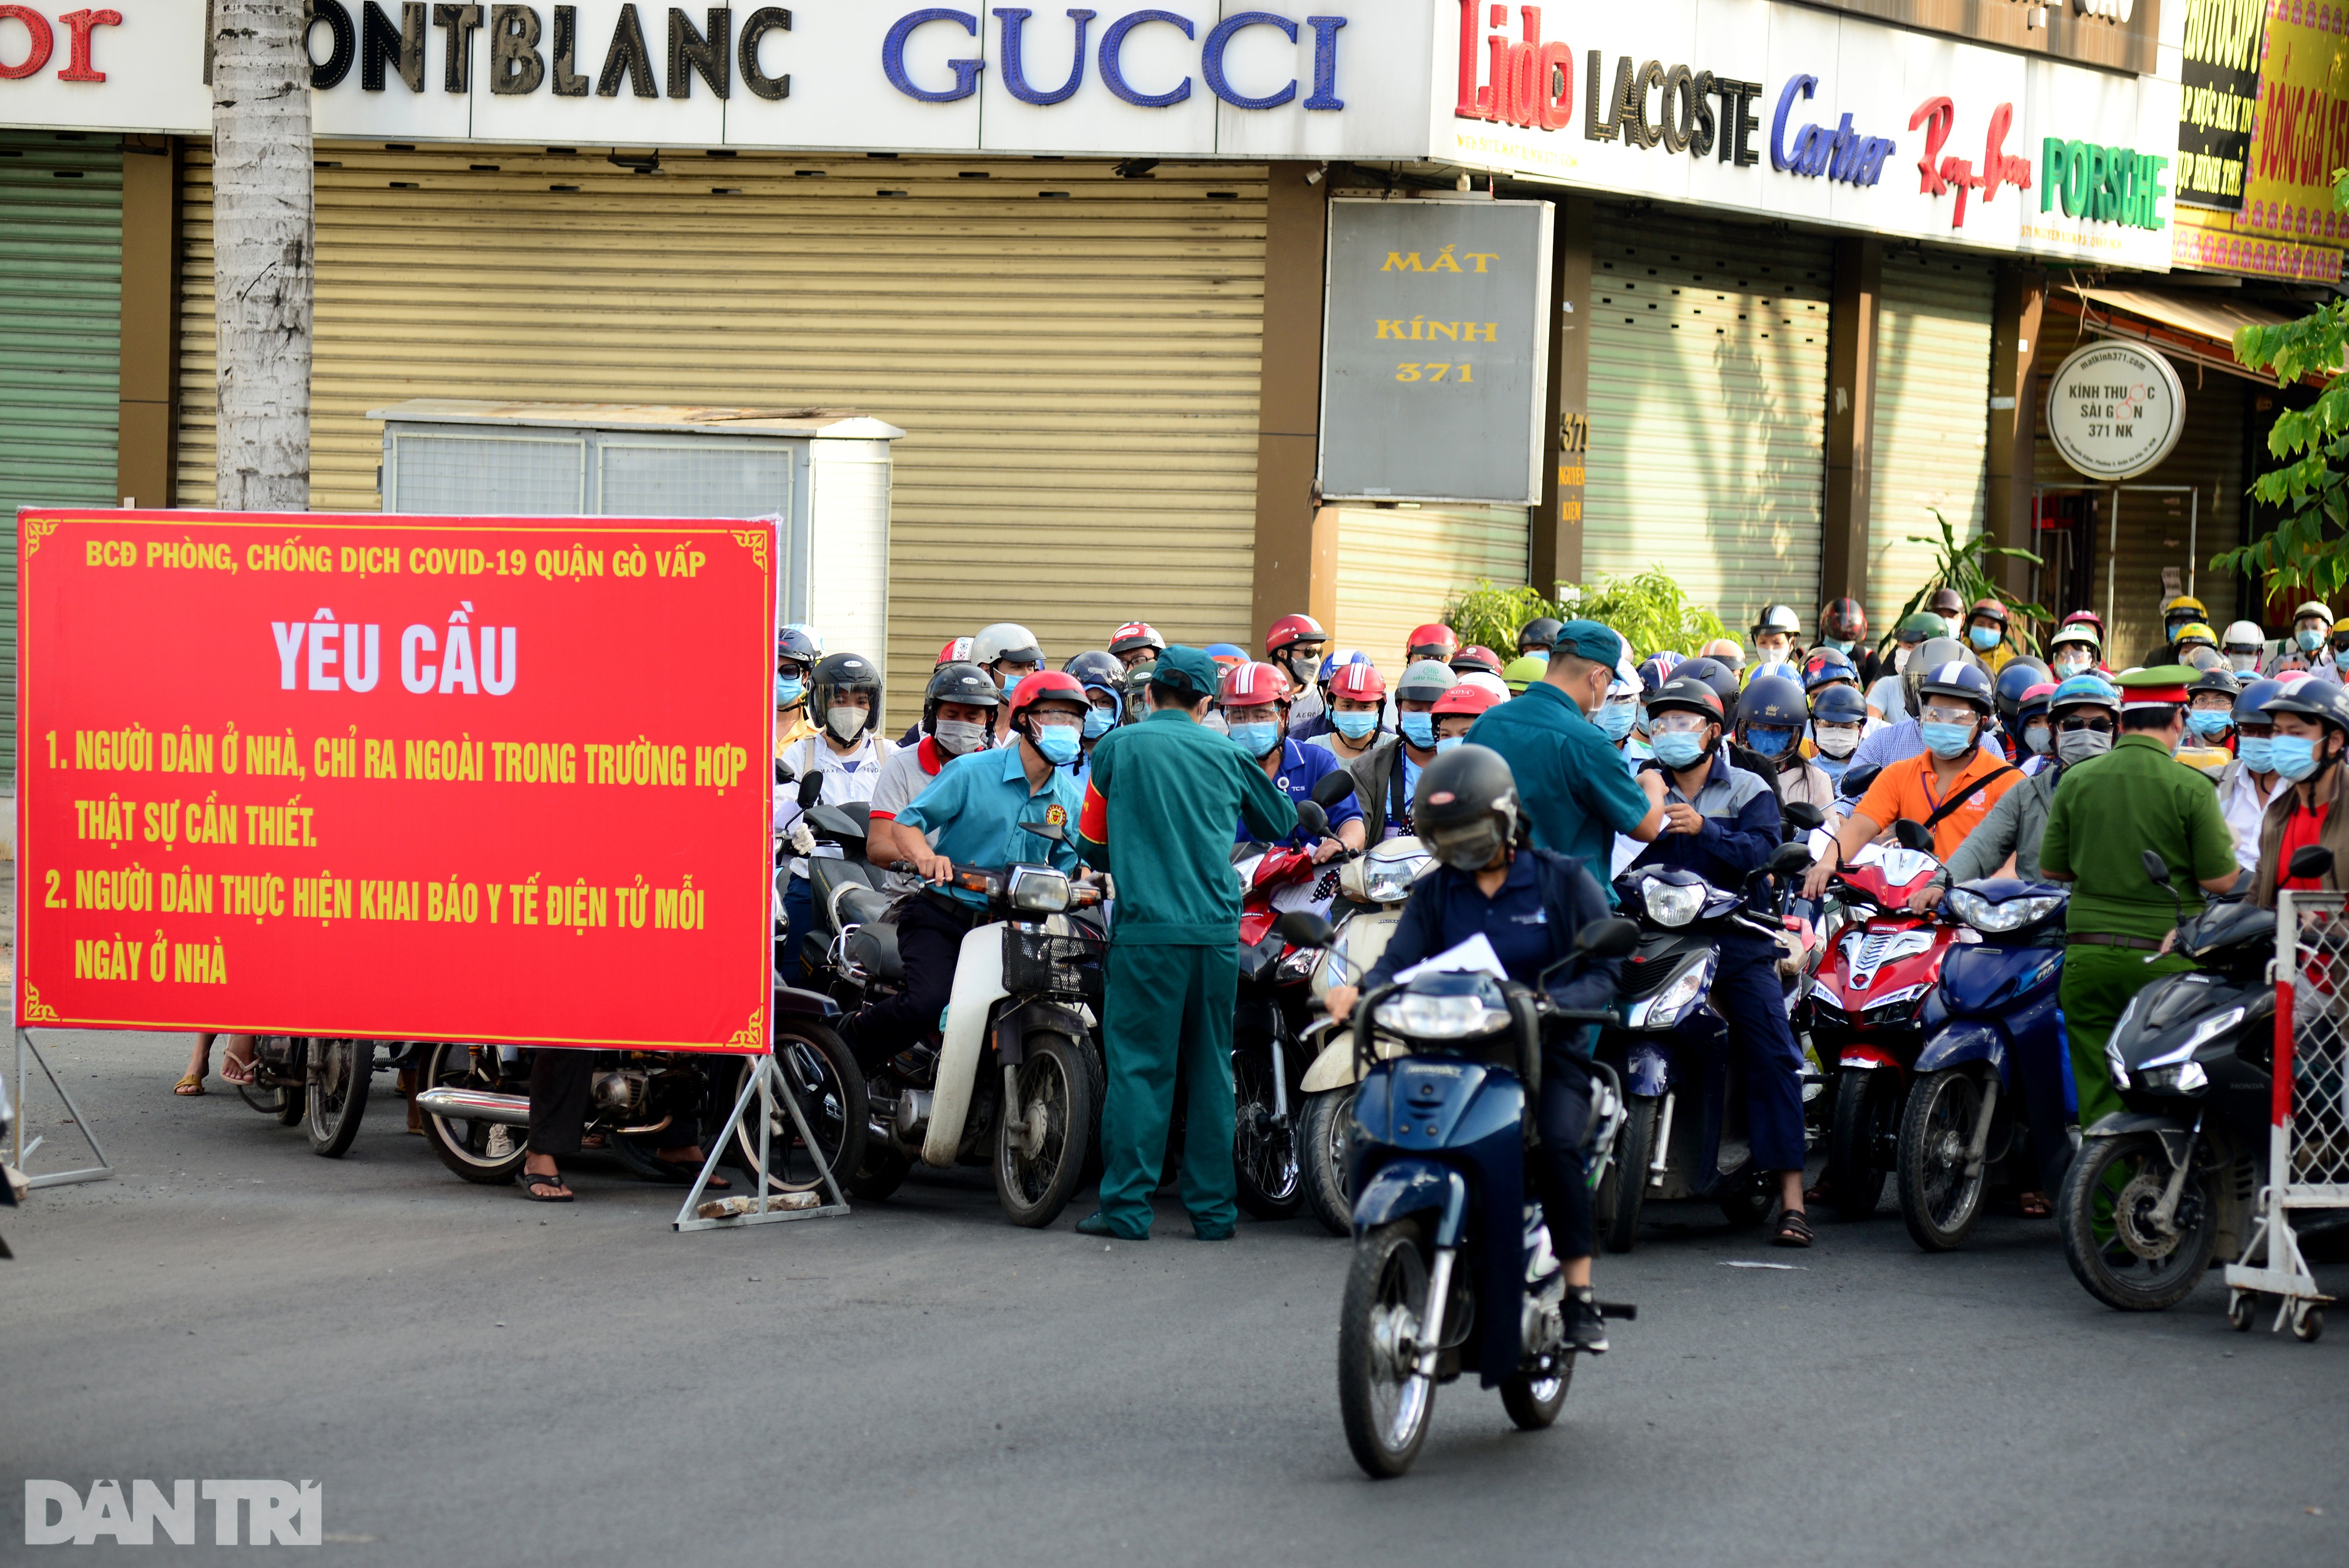 Biển người chờ qua chốt kiểm dịch ở Sài Gòn, lực lượng chức năng gặp khó - 1